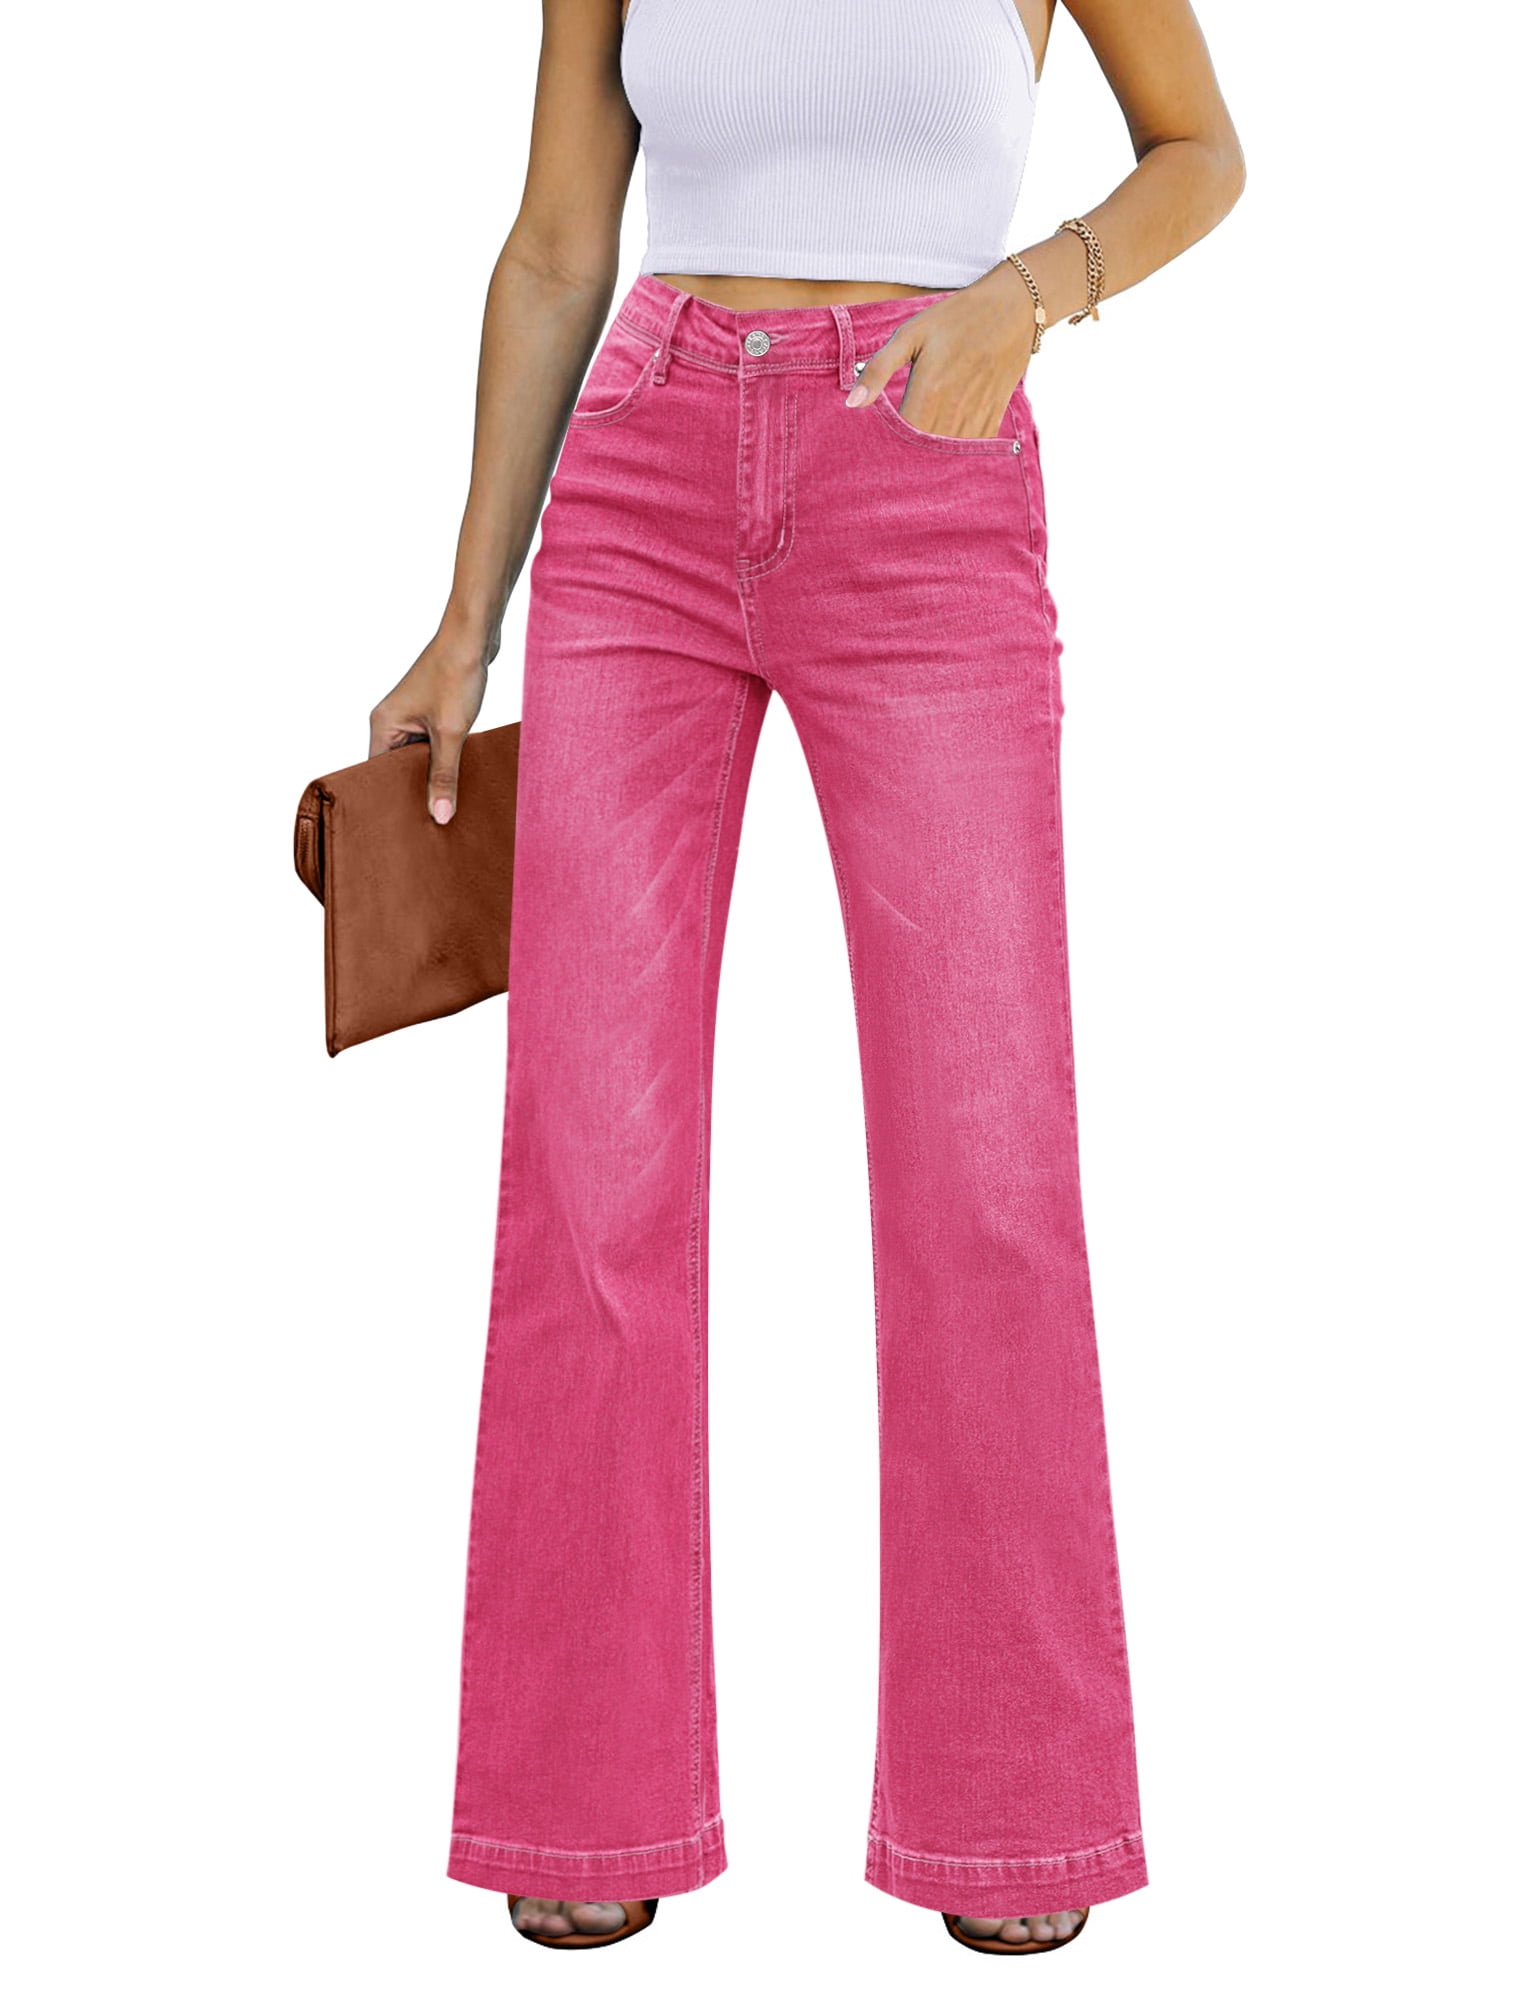 Women's Jeans High Waist Cargo Jeans Baby Pink S - Walmart.com